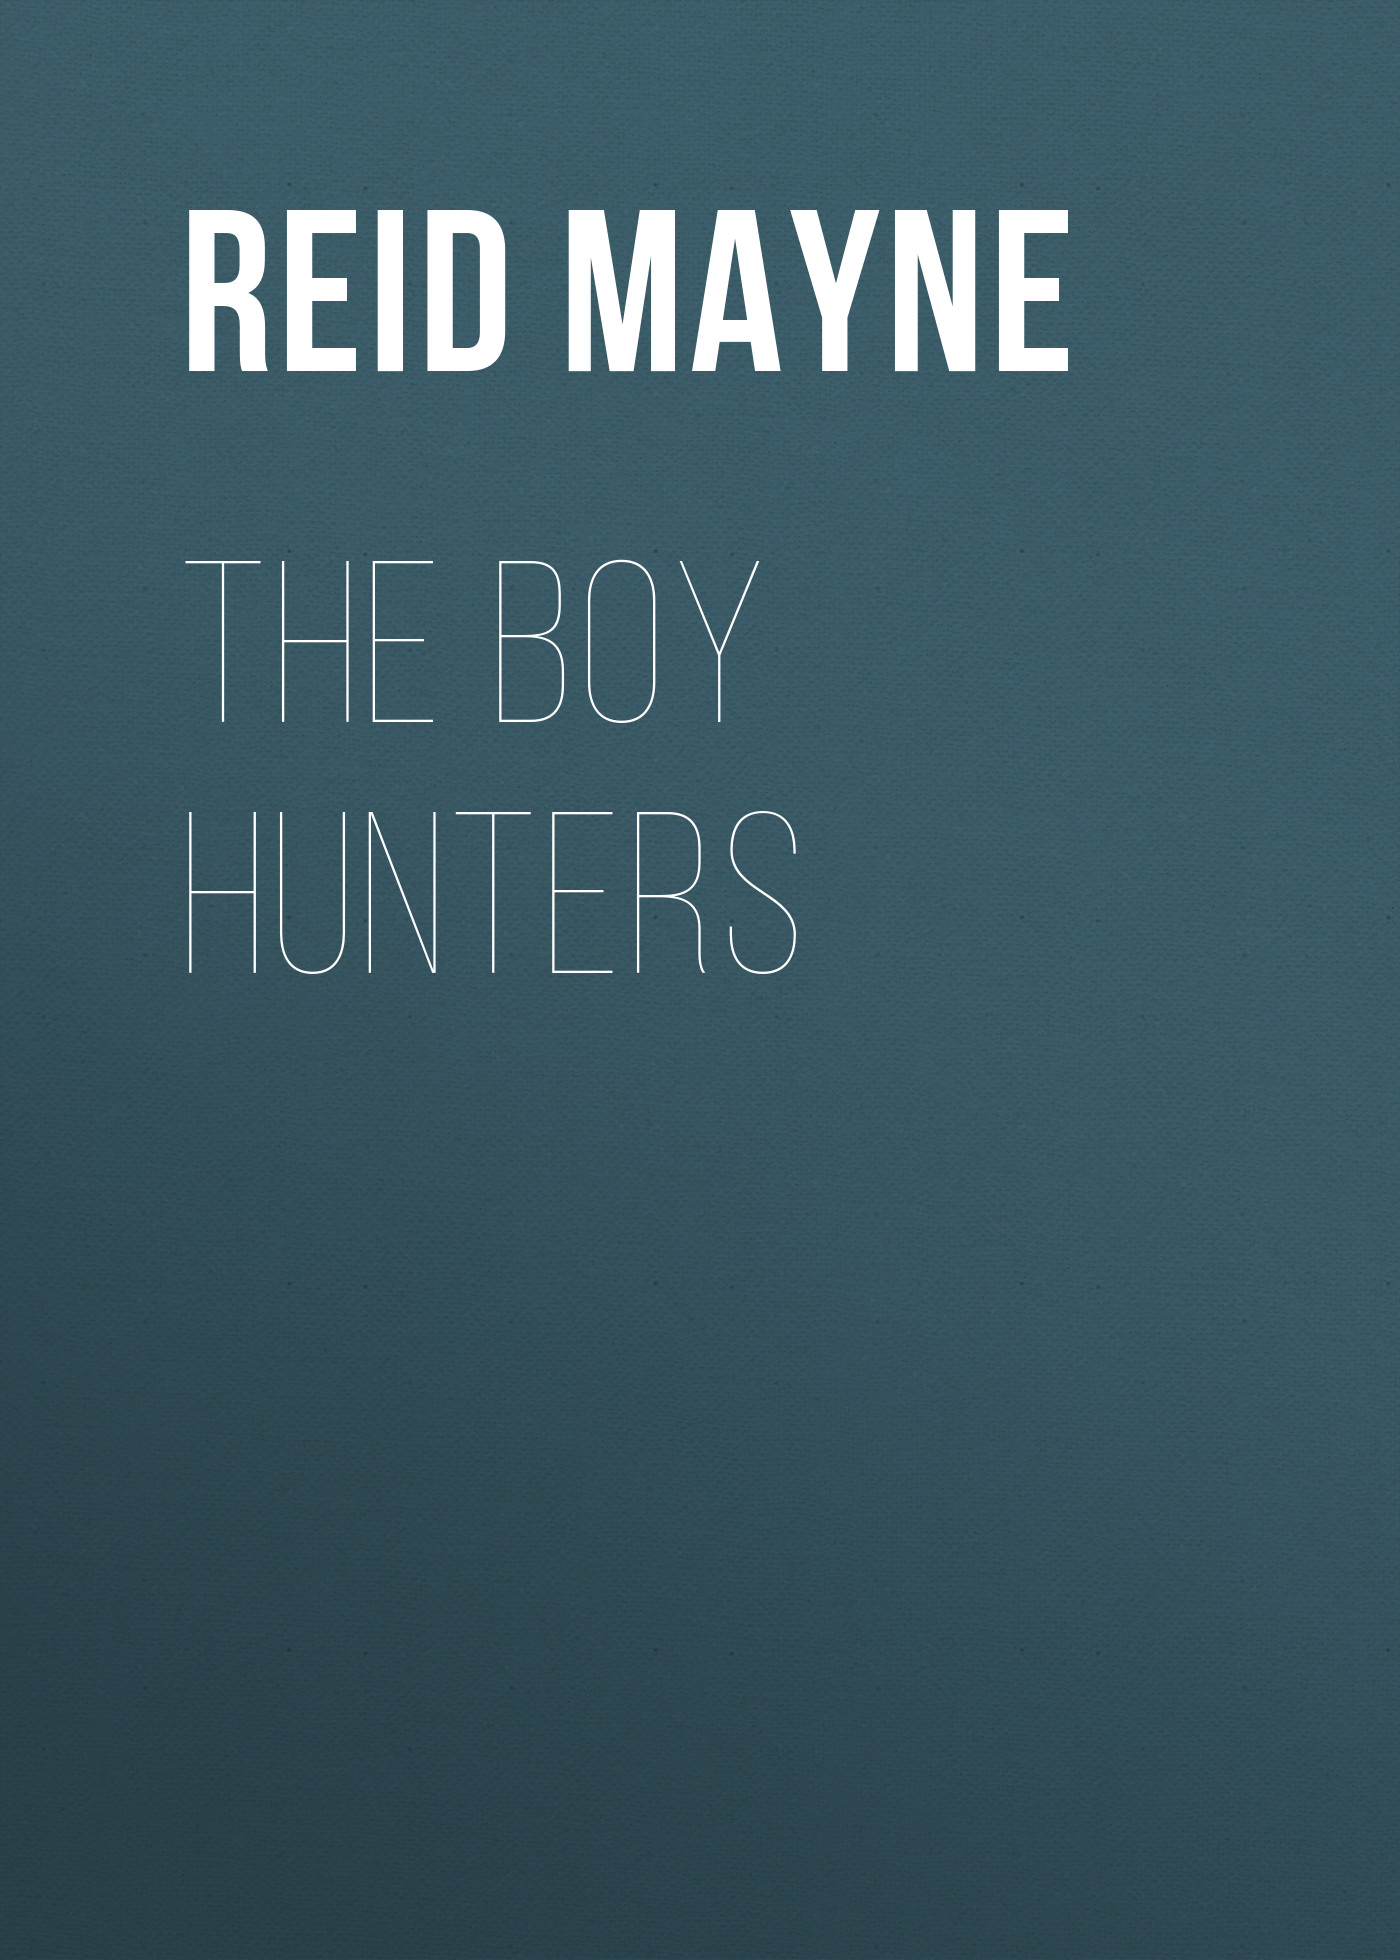 Книга The Boy Hunters из серии , созданная Mayne Reid, может относится к жанру Литература 19 века, Зарубежная старинная литература, Зарубежная классика. Стоимость электронной книги The Boy Hunters с идентификатором 25449612 составляет 0 руб.